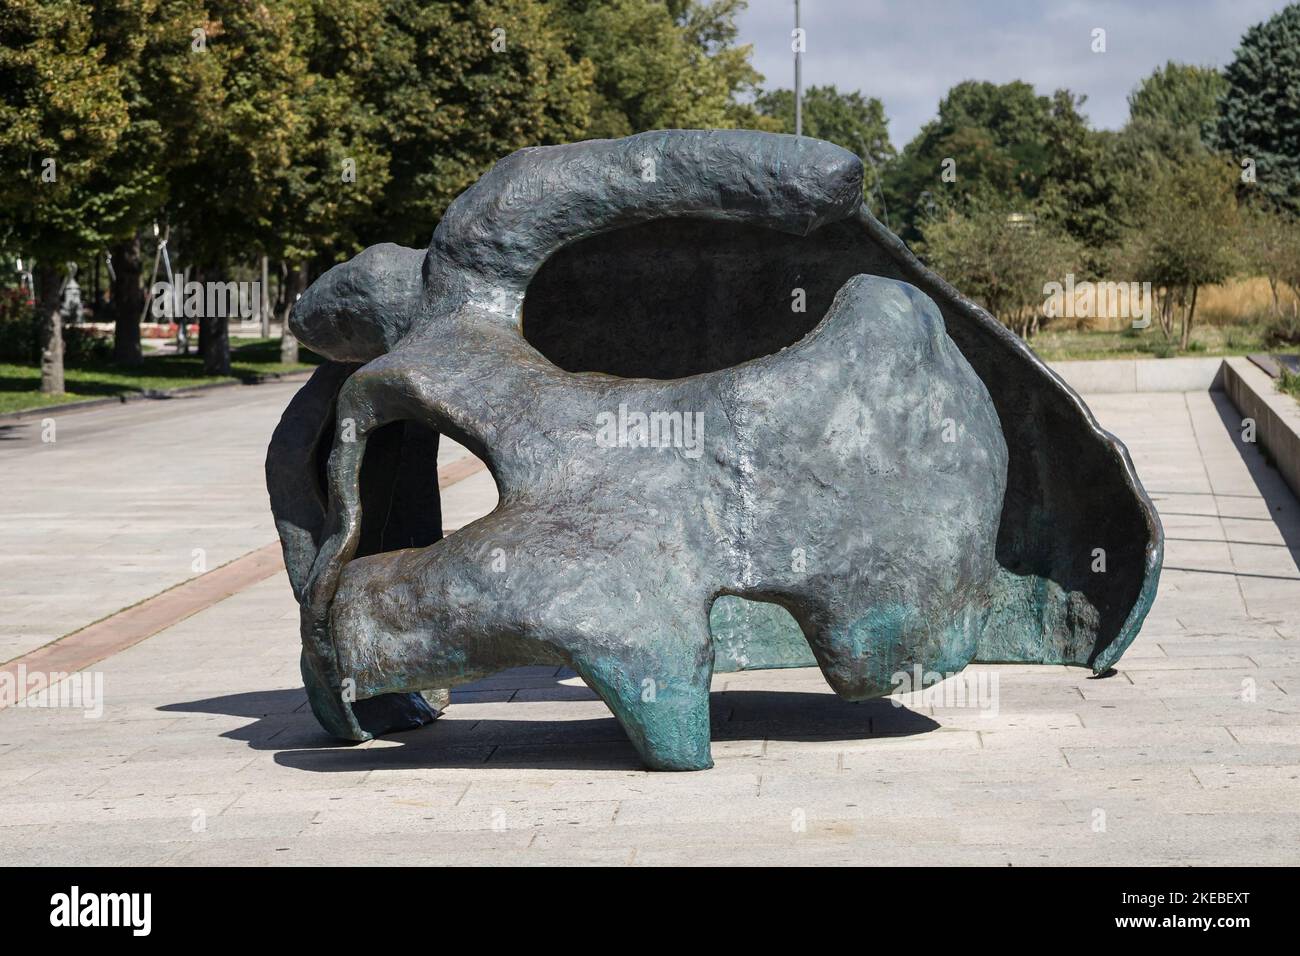 Burgos, España - 28 de agosto de 2020: Escultura del Cráneo de Miguelón frente al Museo de la Evolución Humana de Burgos, España. Foto de stock